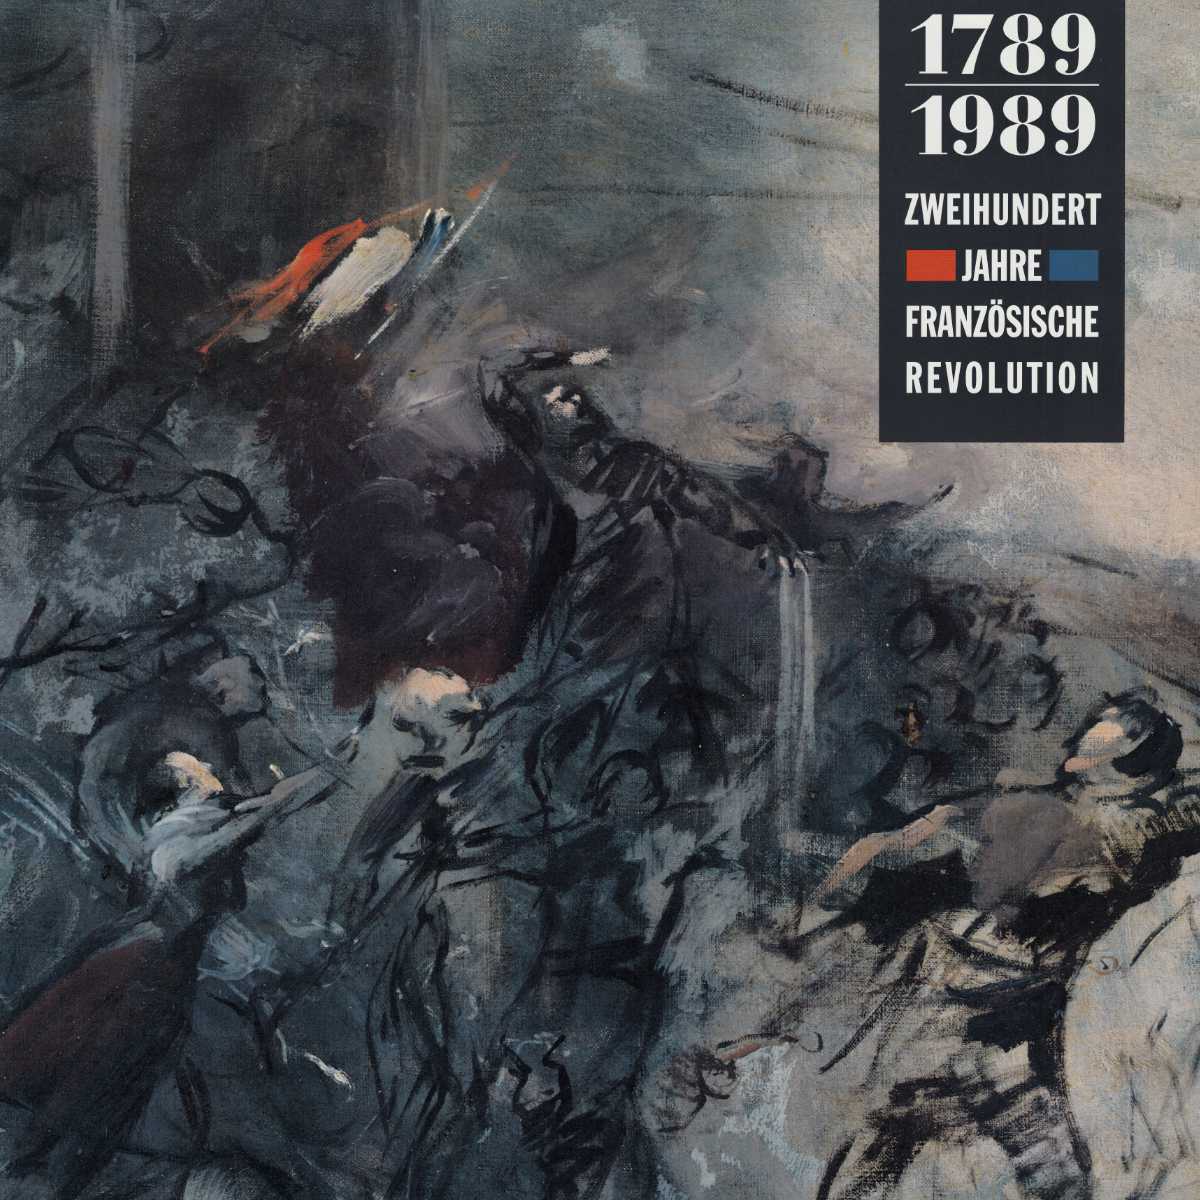 Zweihundert Jahre französische Revolution (1789-1989), 1989